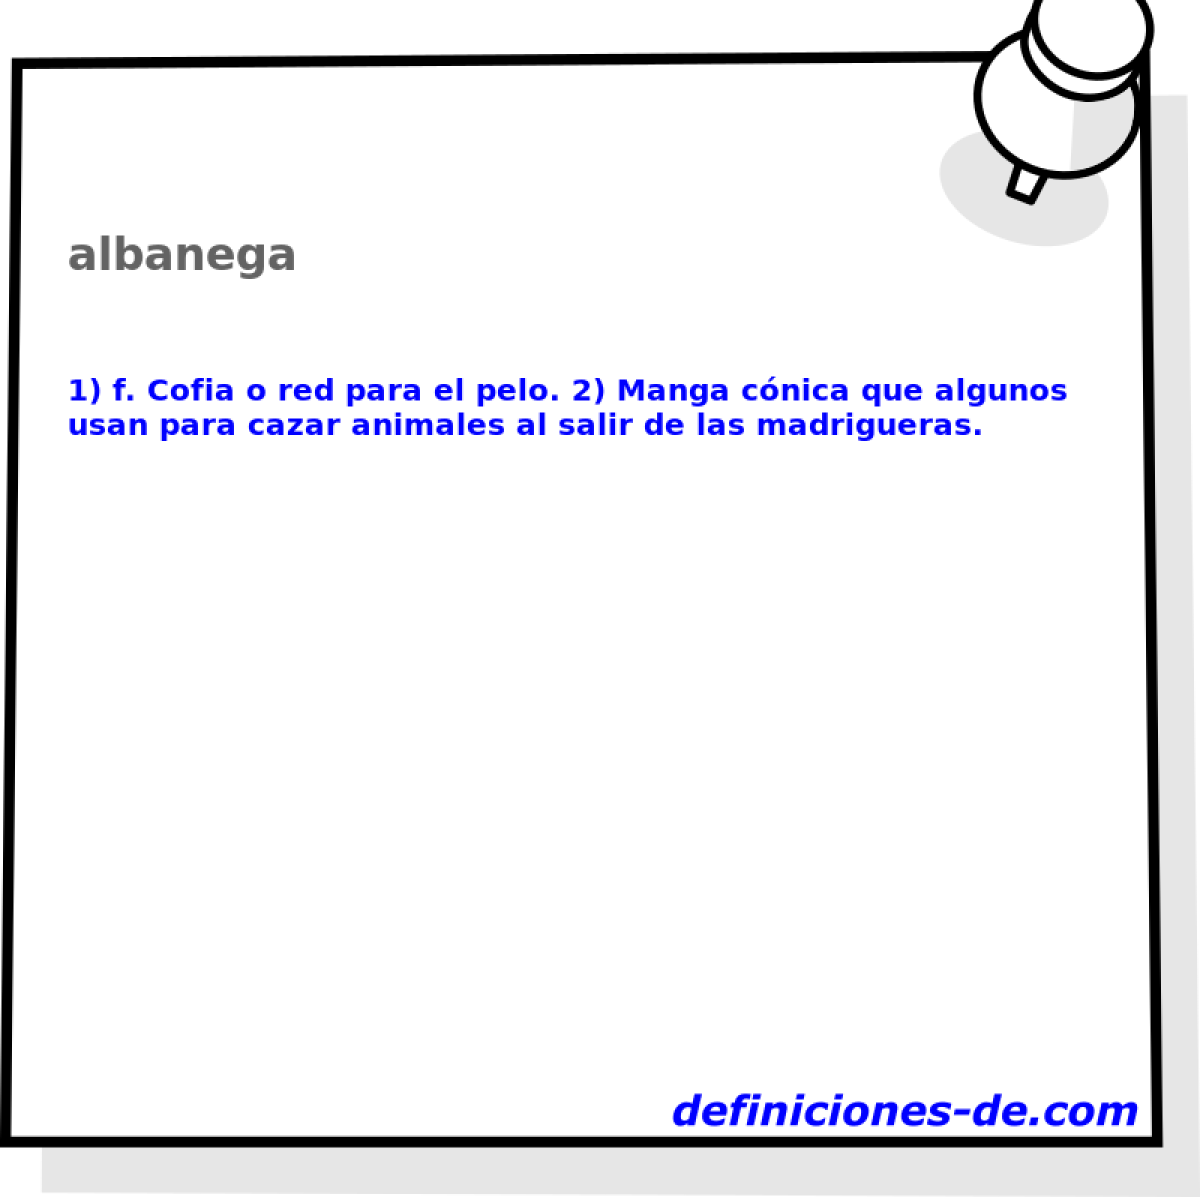 albanega 